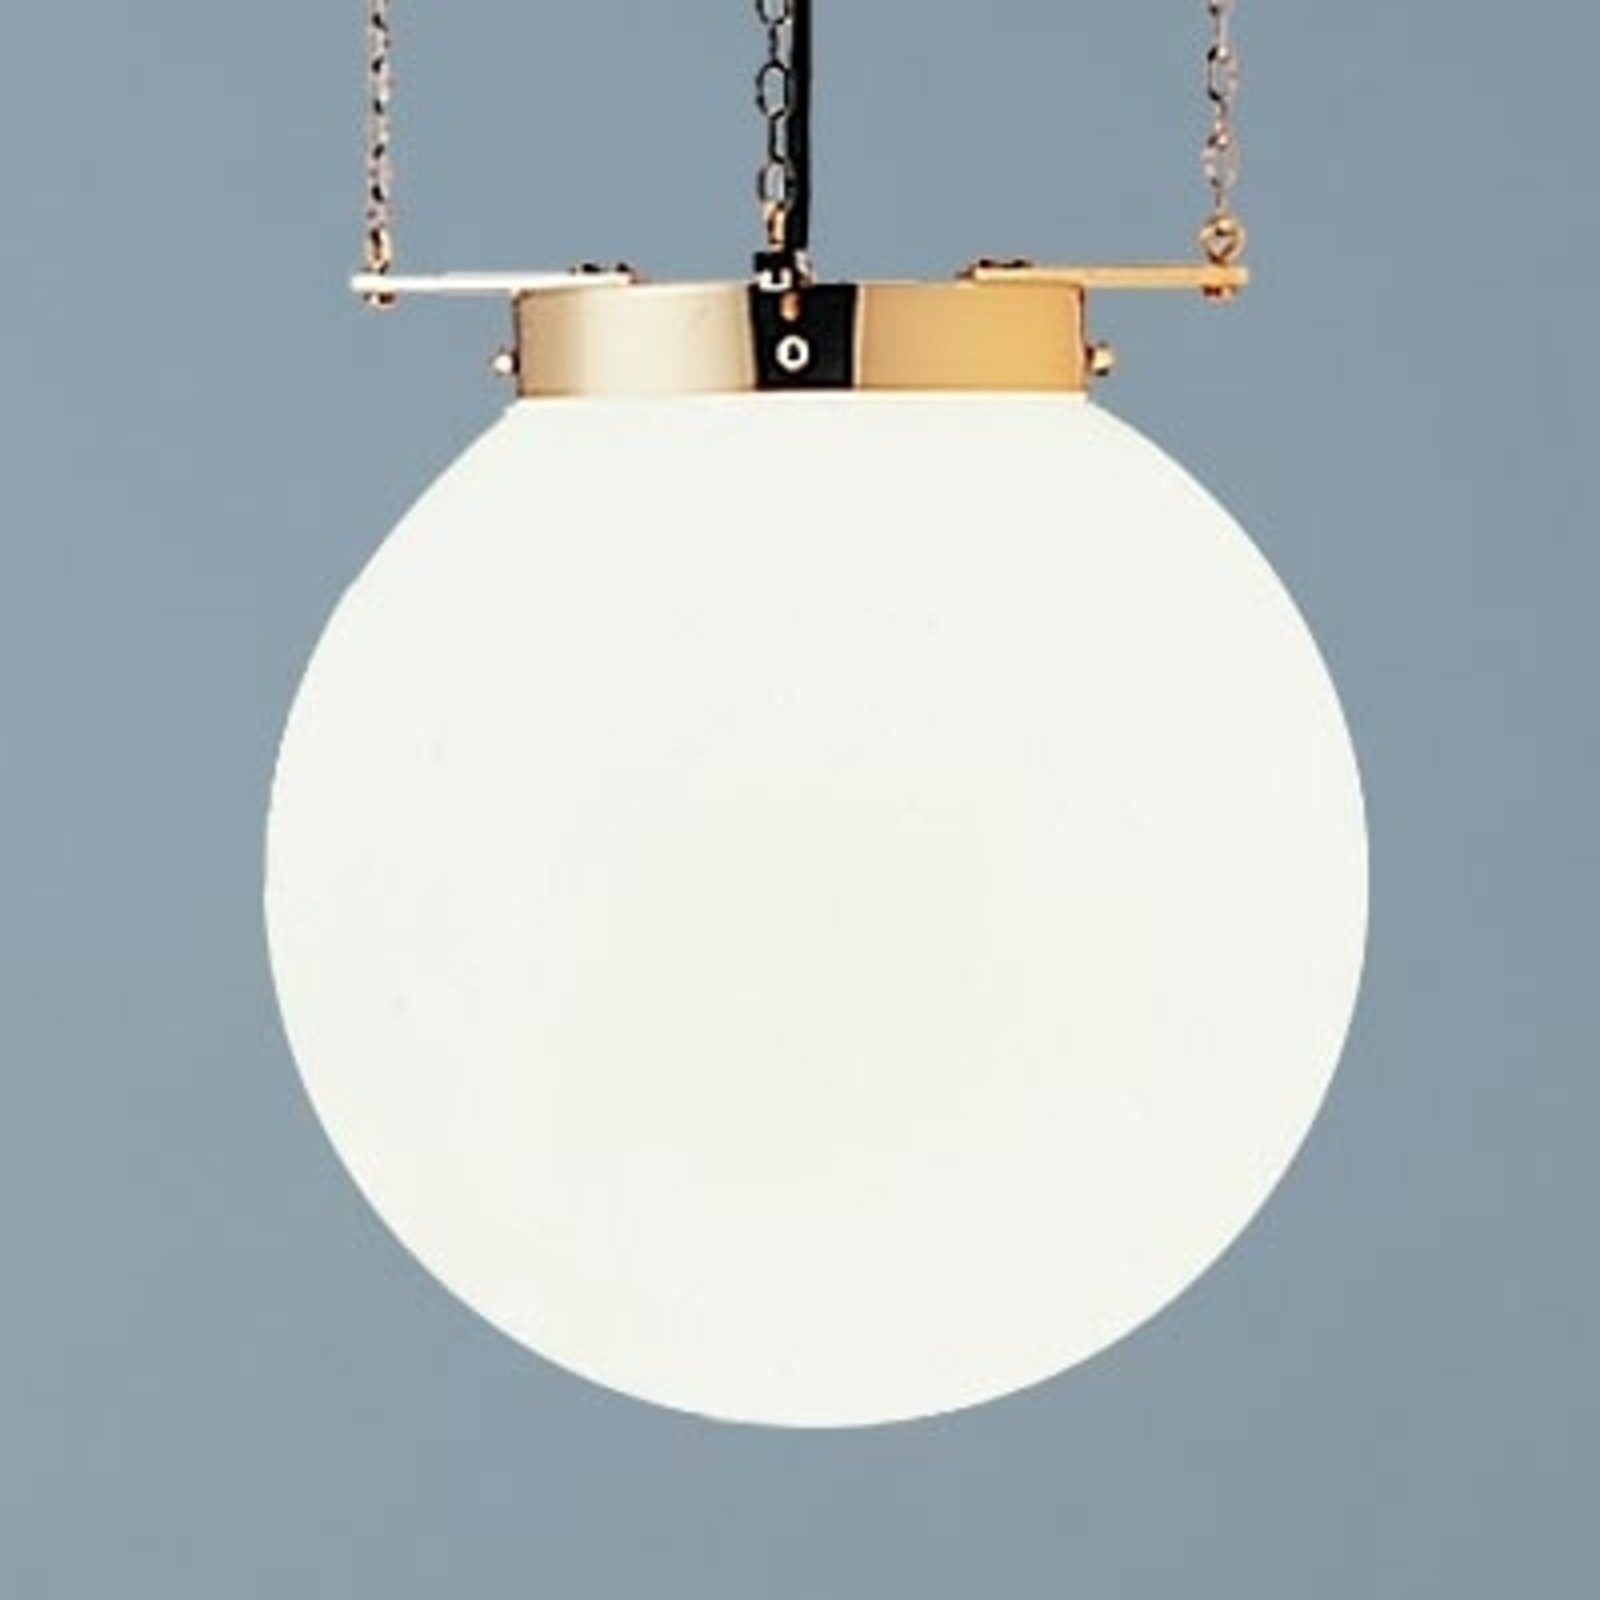 Hanglamp in Bauhaus-stijl, messing, 40 cm